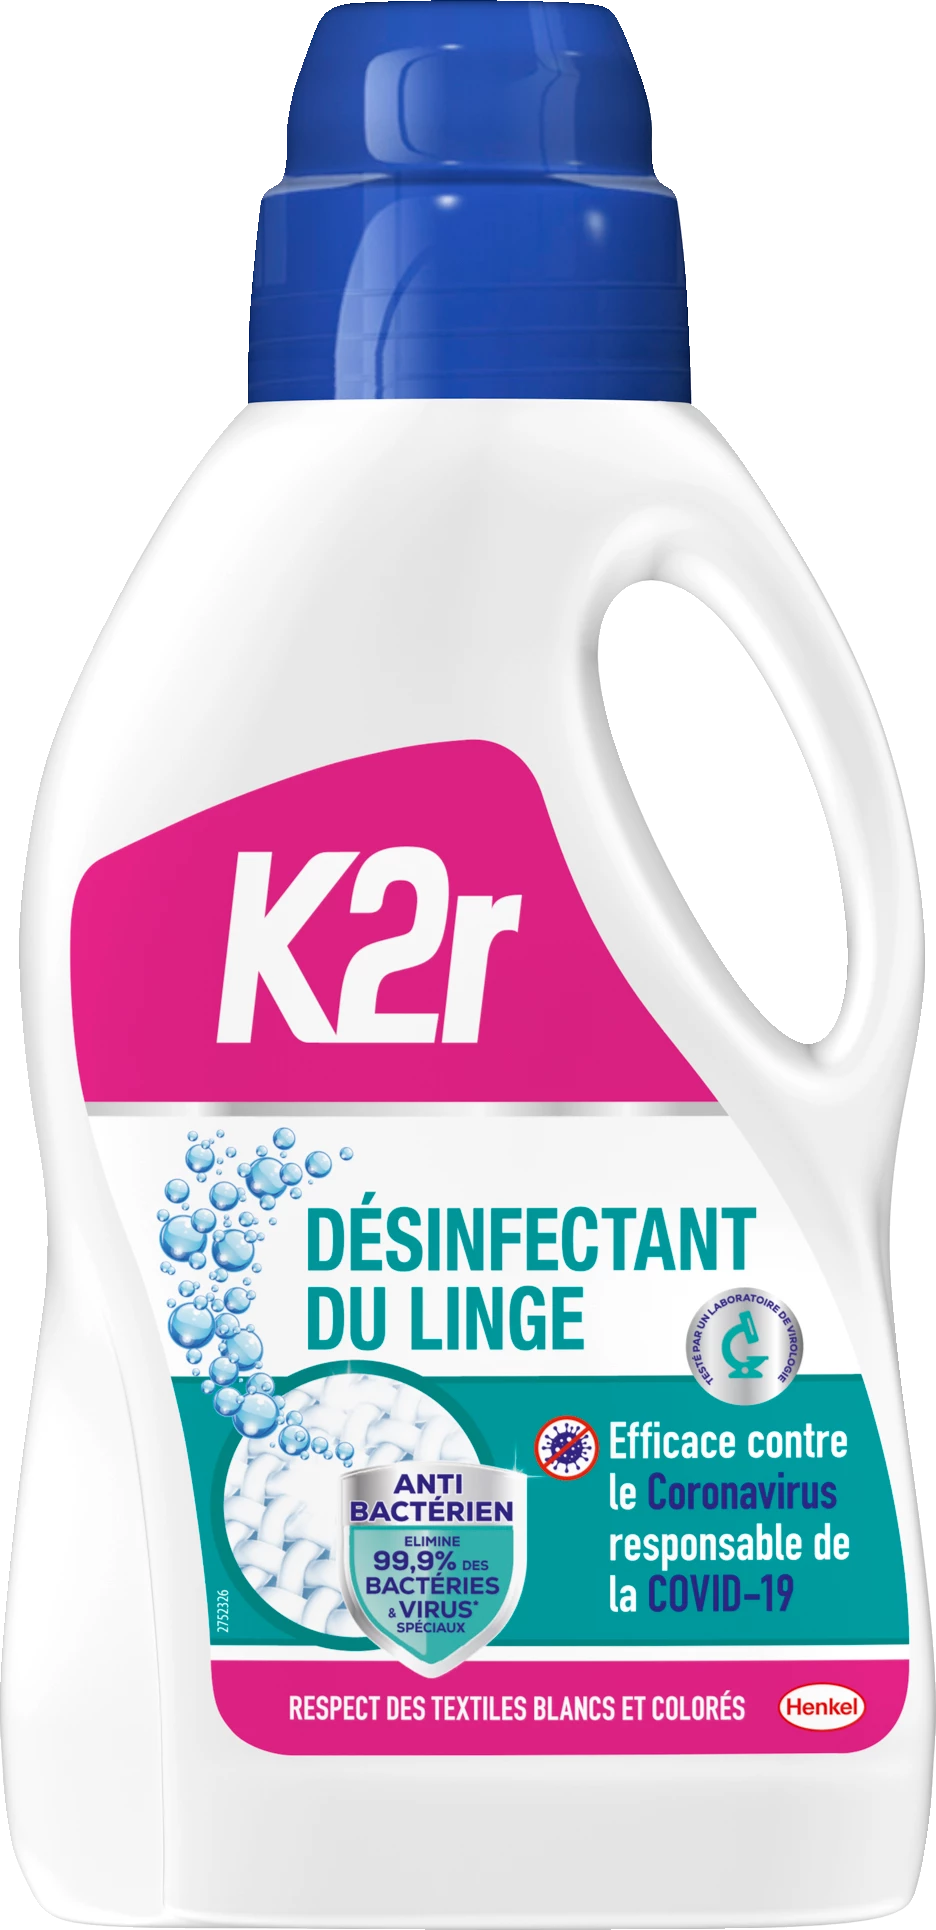 K2r Laundry Disinfectant 1l